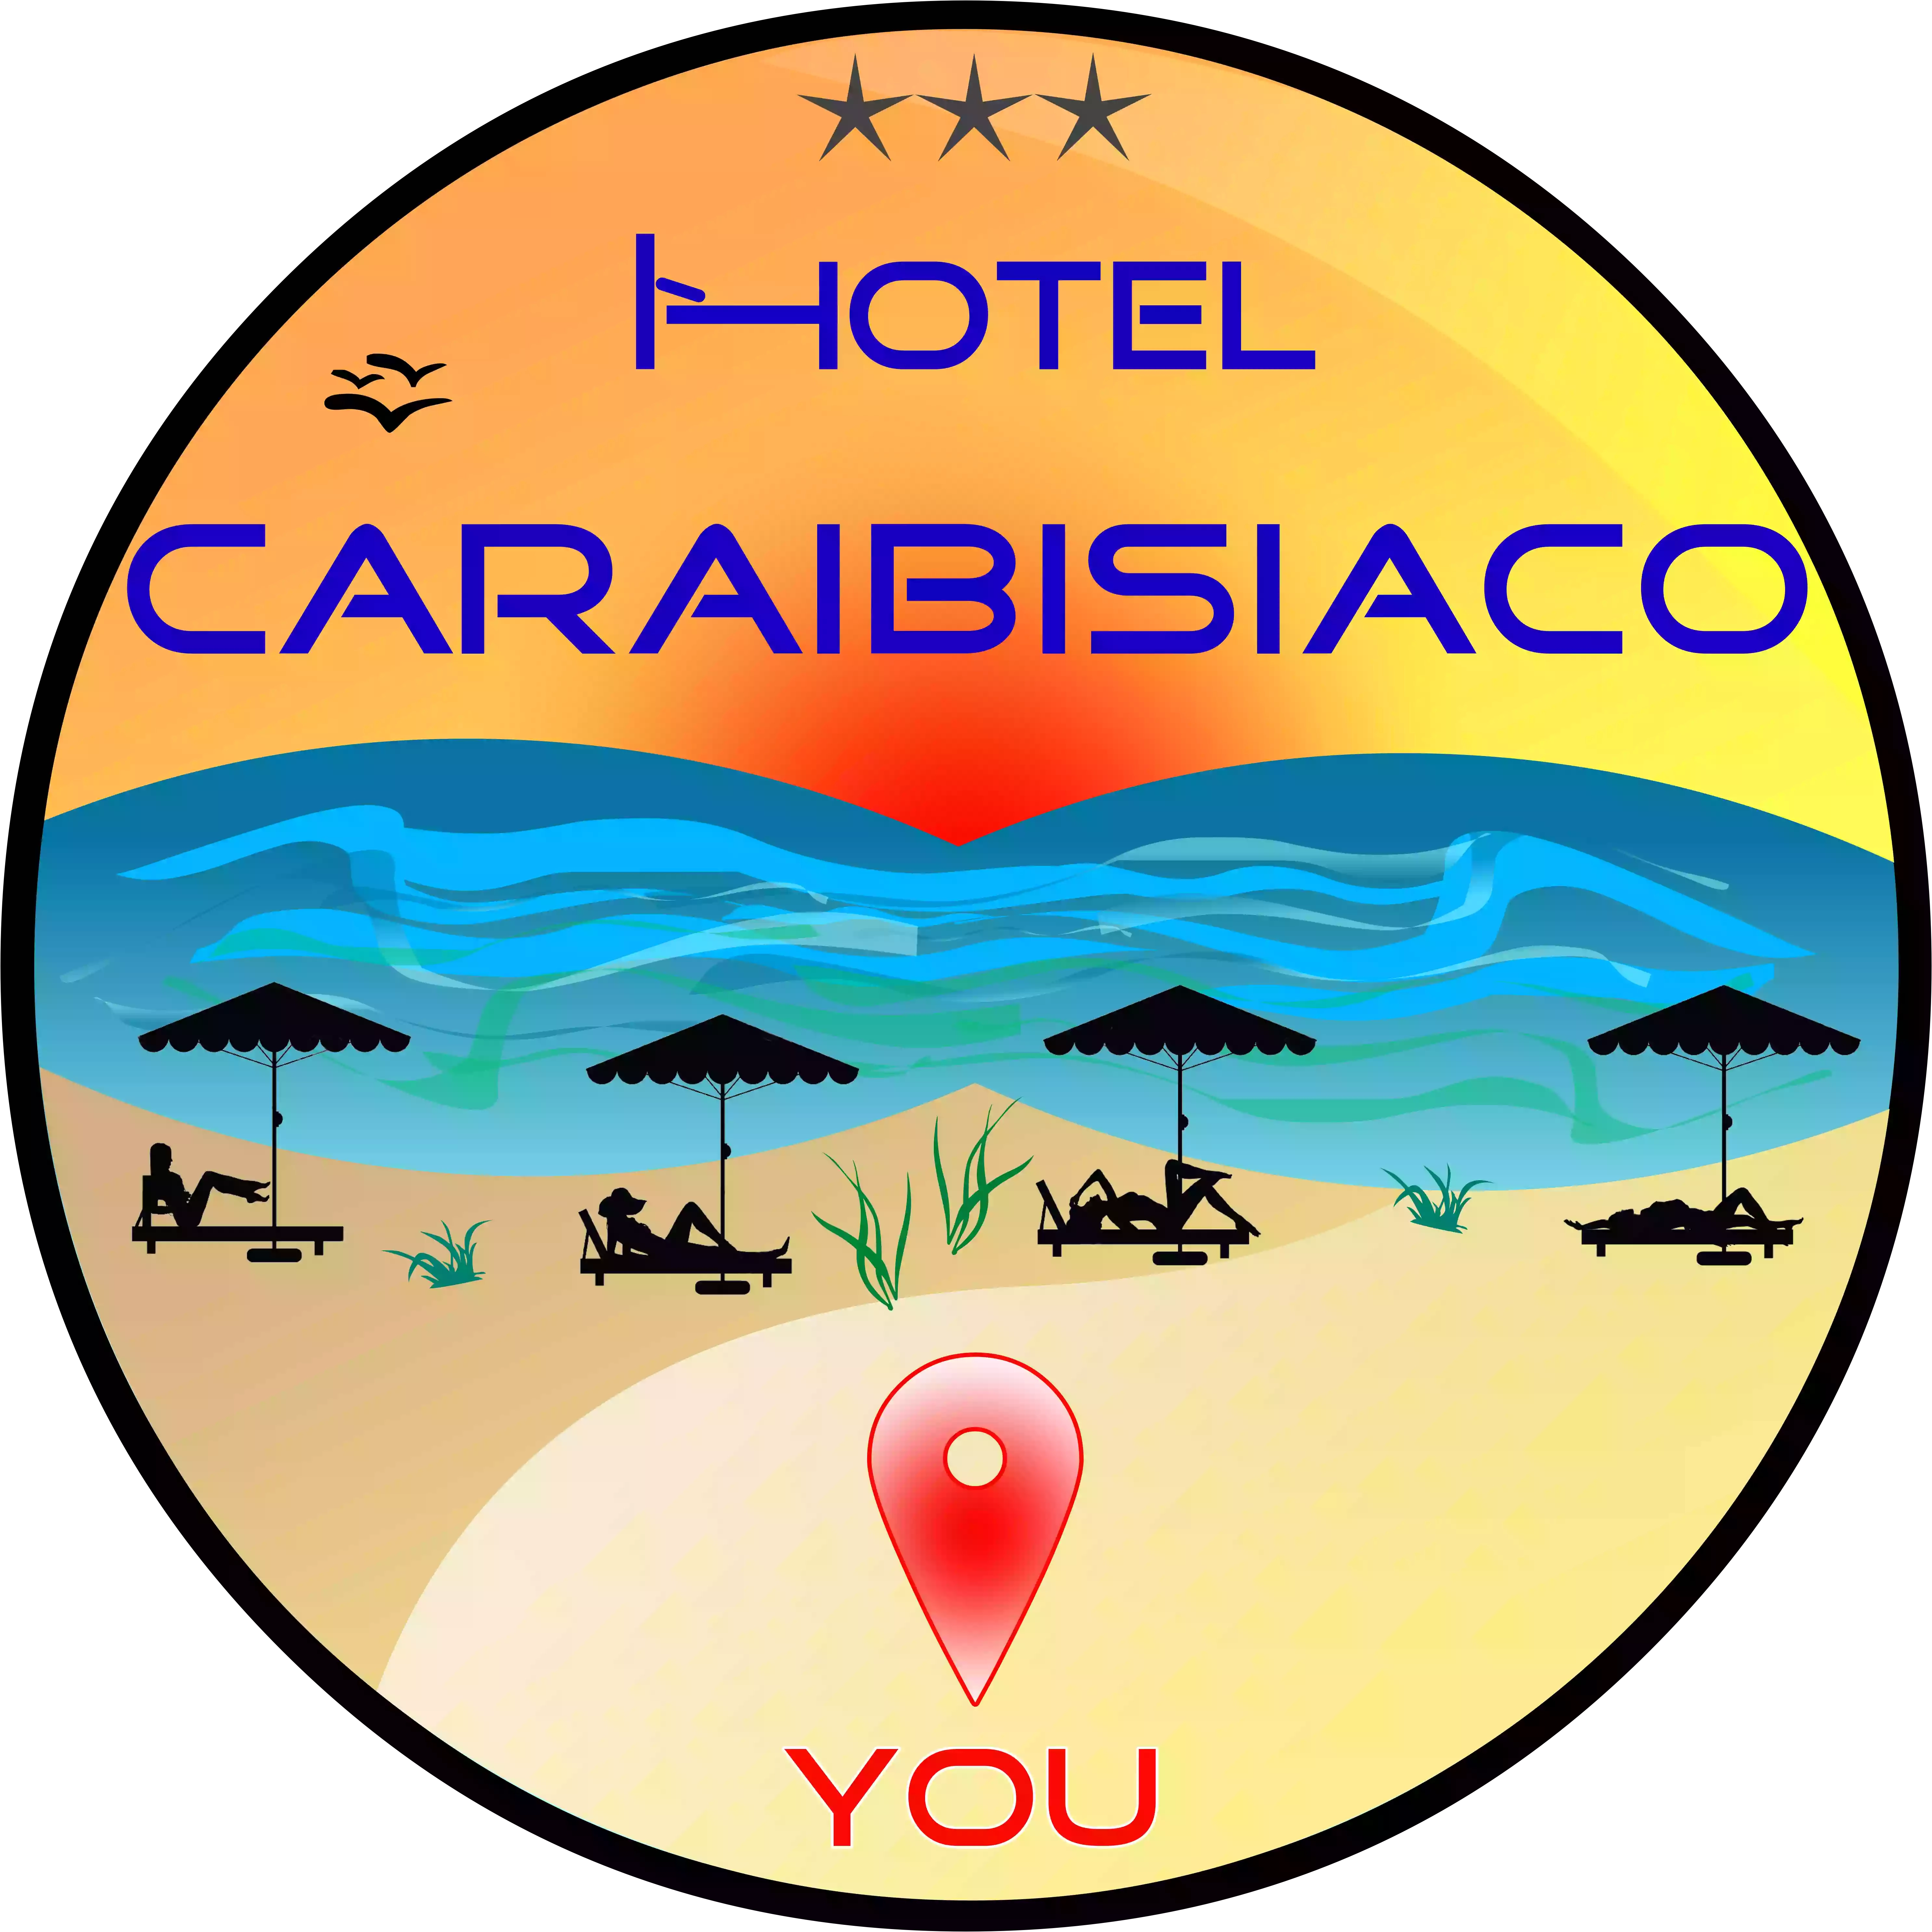 HOTEL CARAIBISIACO PUGLIA SUL MARE IONIO